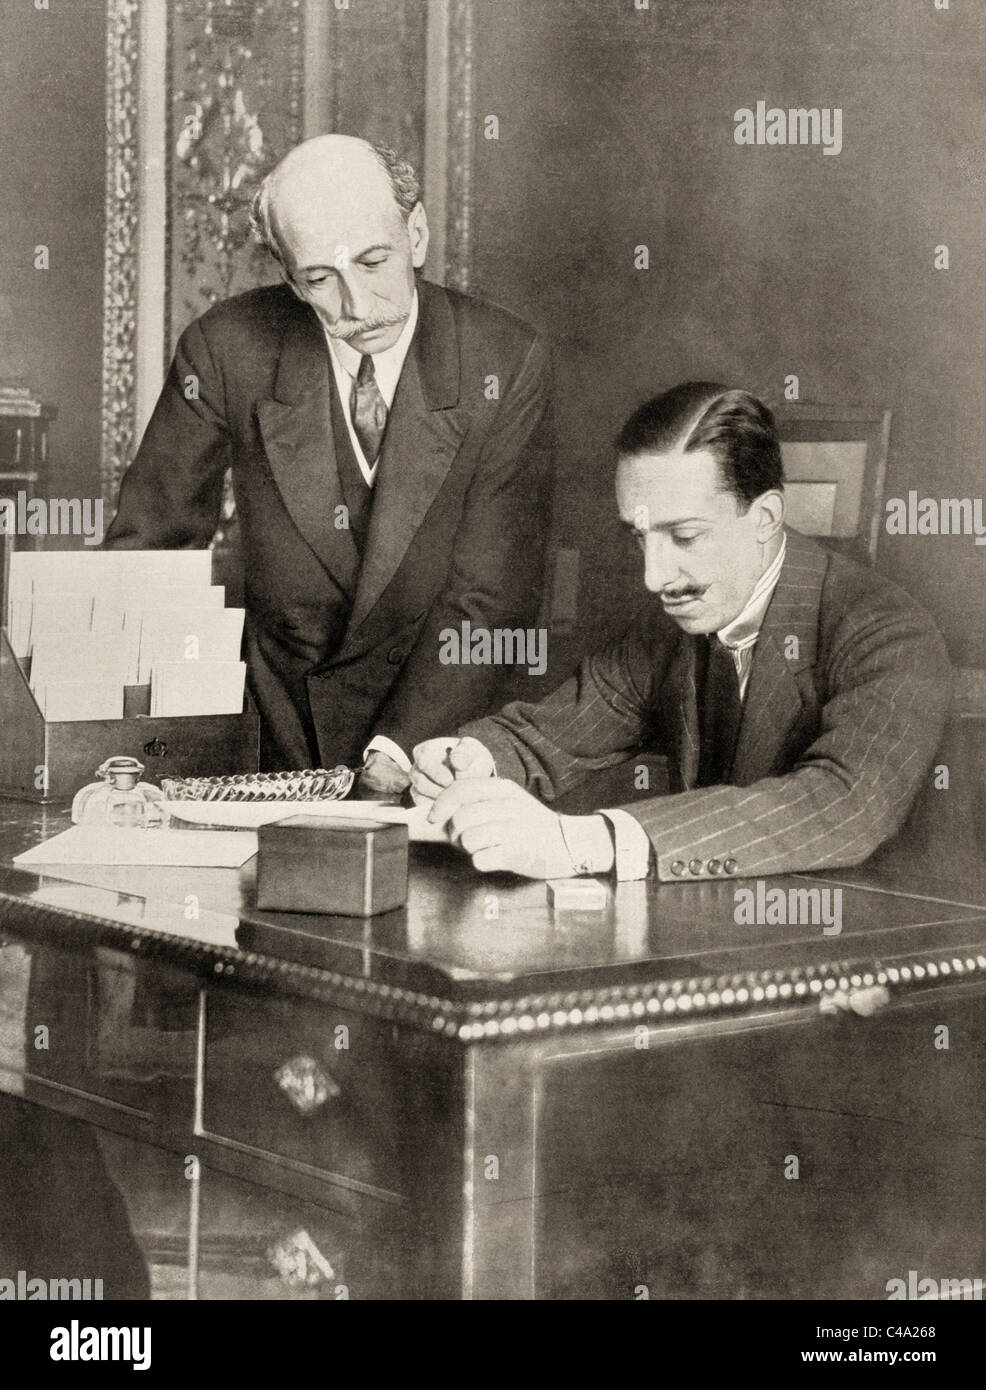 Alfonso XIII de Borbón, 1886 – 1941. König von Spanien von seiner Geburt bis zur Proklamation der Zweiten Republik im Jahr 1931. Hier mit Eduardo dato Iradier, Presidente del Consejo. Stockfoto